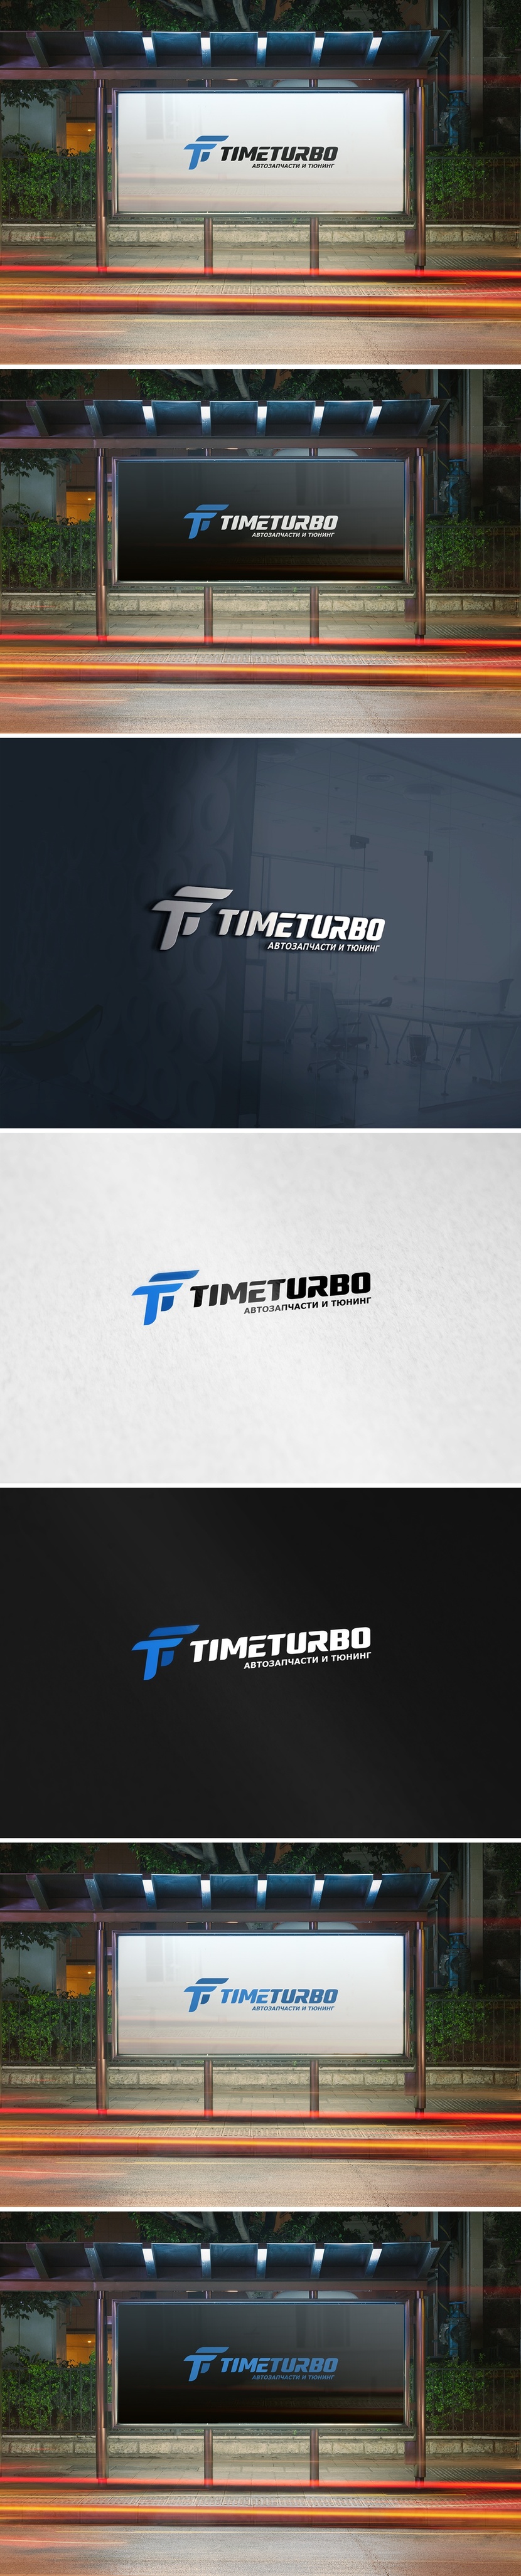 TimeTurbo - Редизайн логотипа и фирменного стиля интернет-магазина автомобильных запчастей